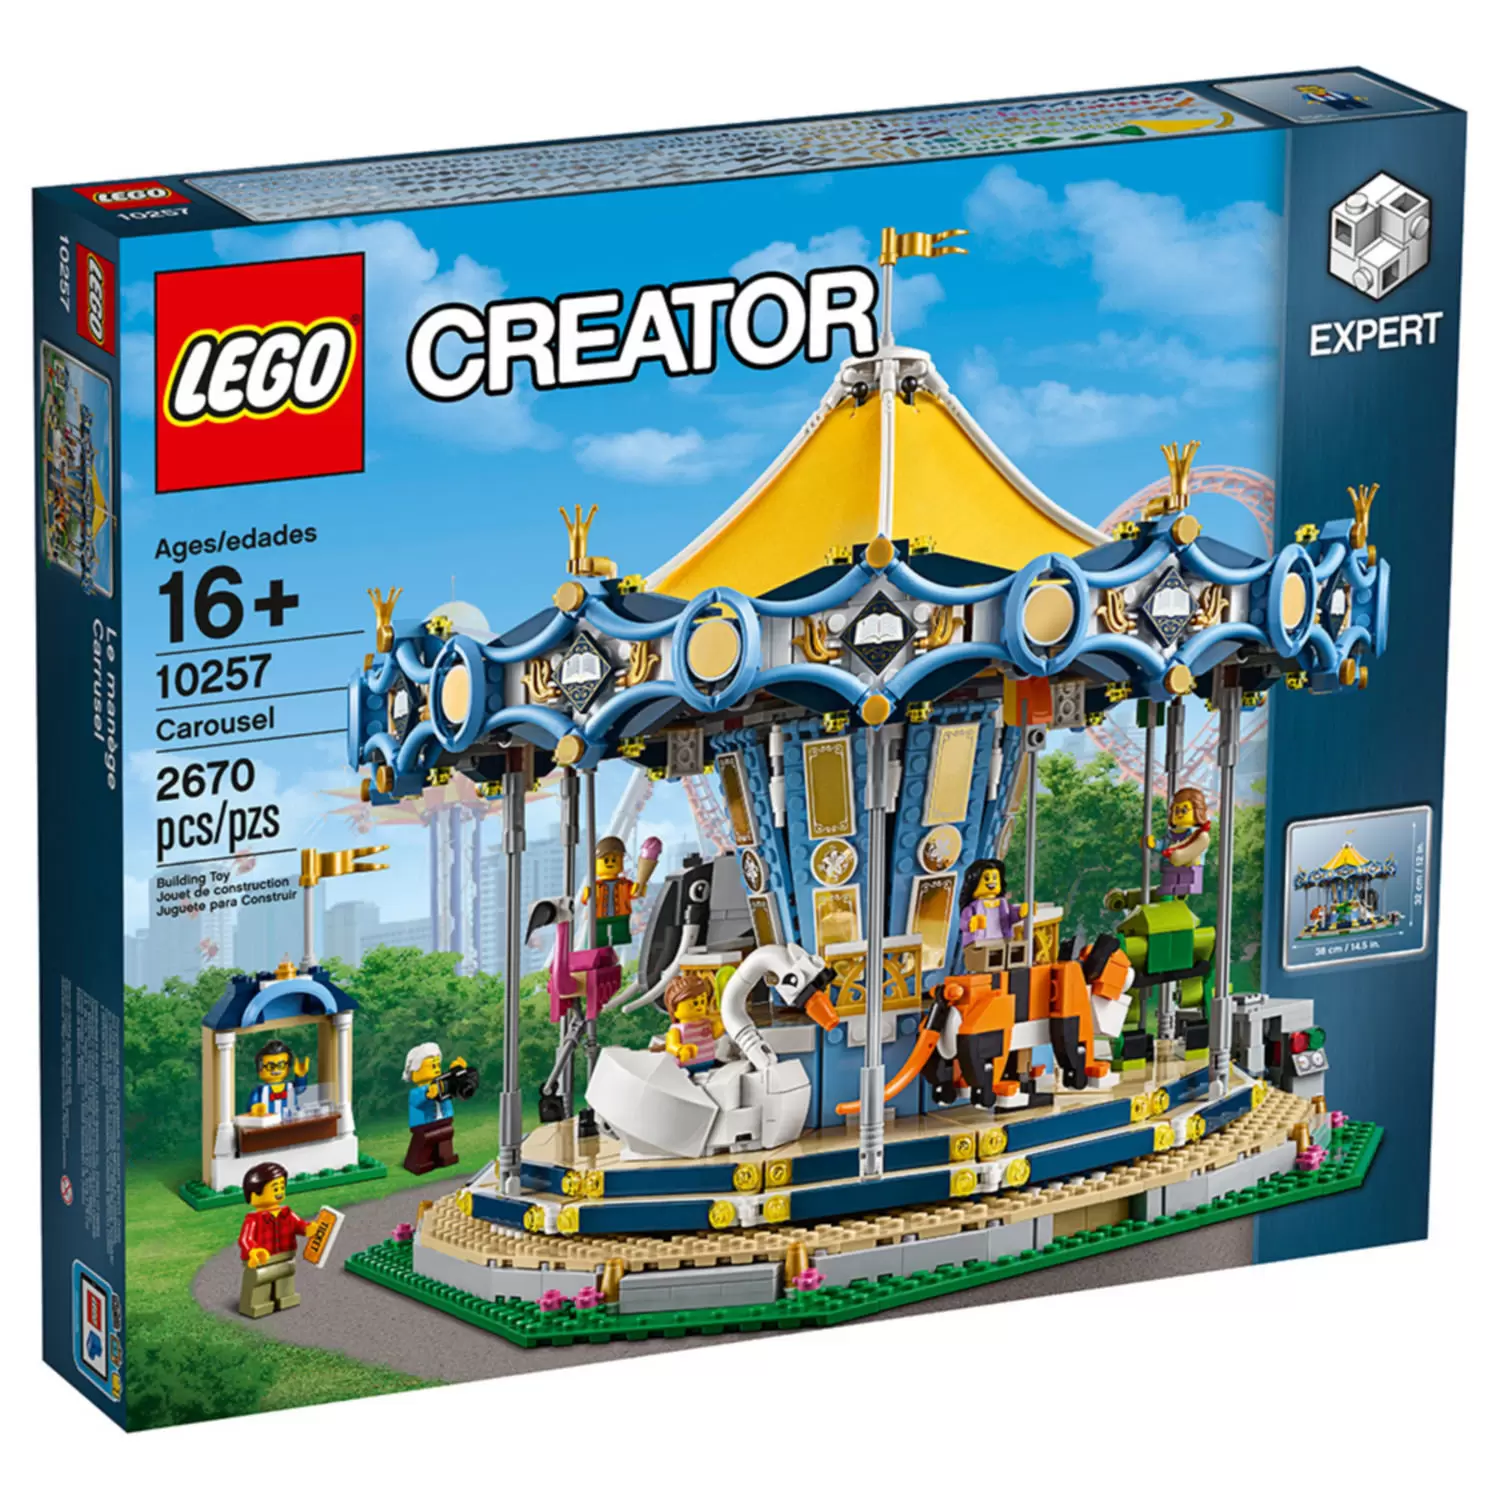 LEGO Creator - Carousel